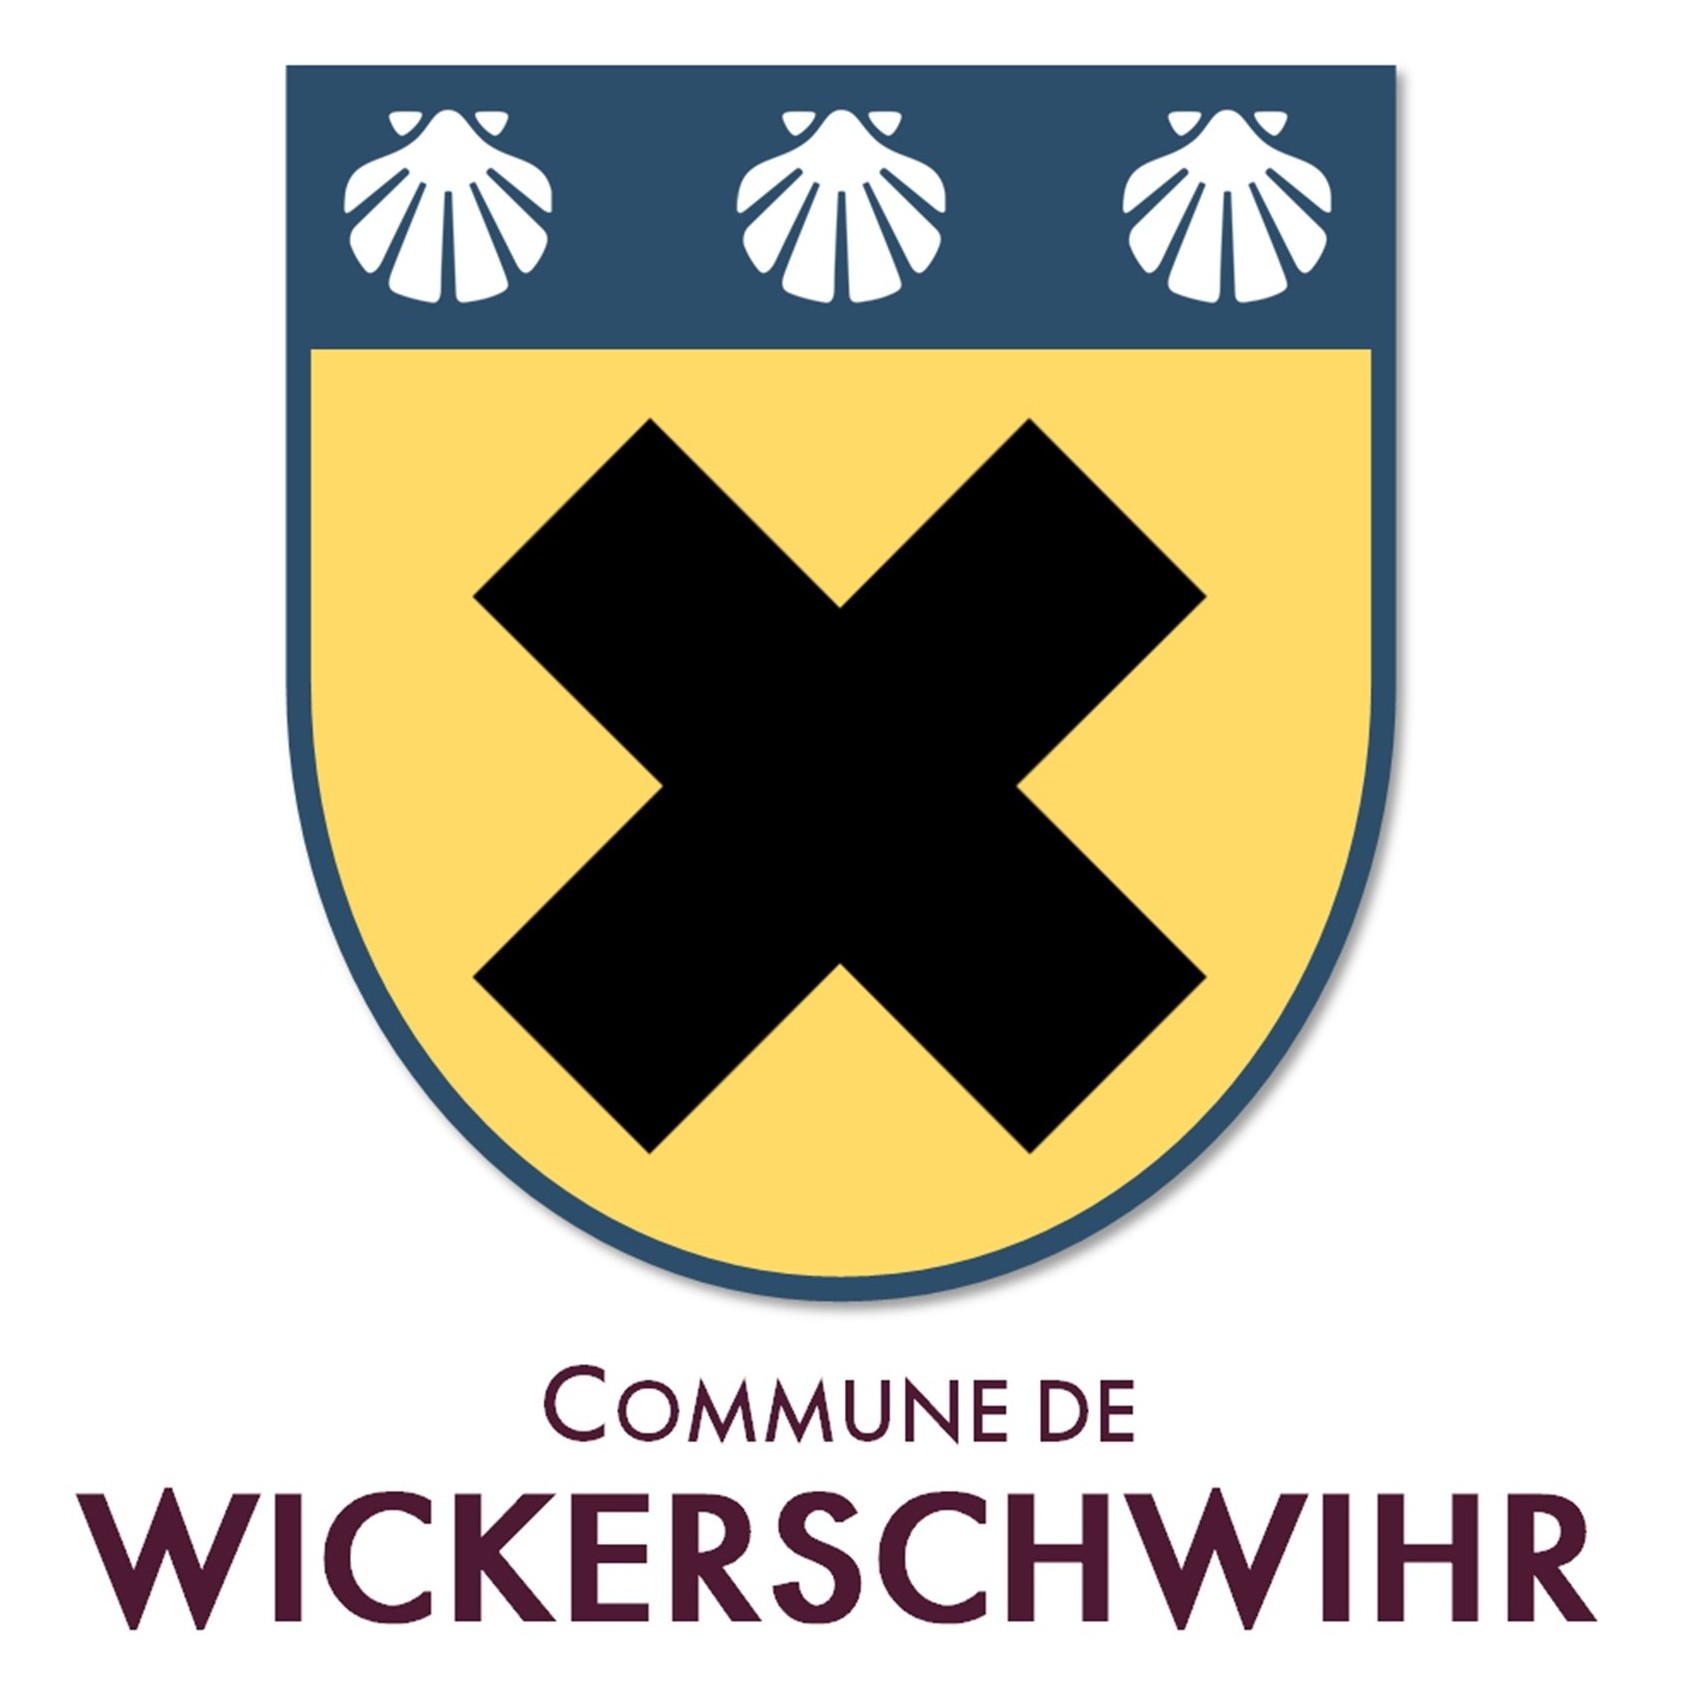 Commune de Wickerschwihr